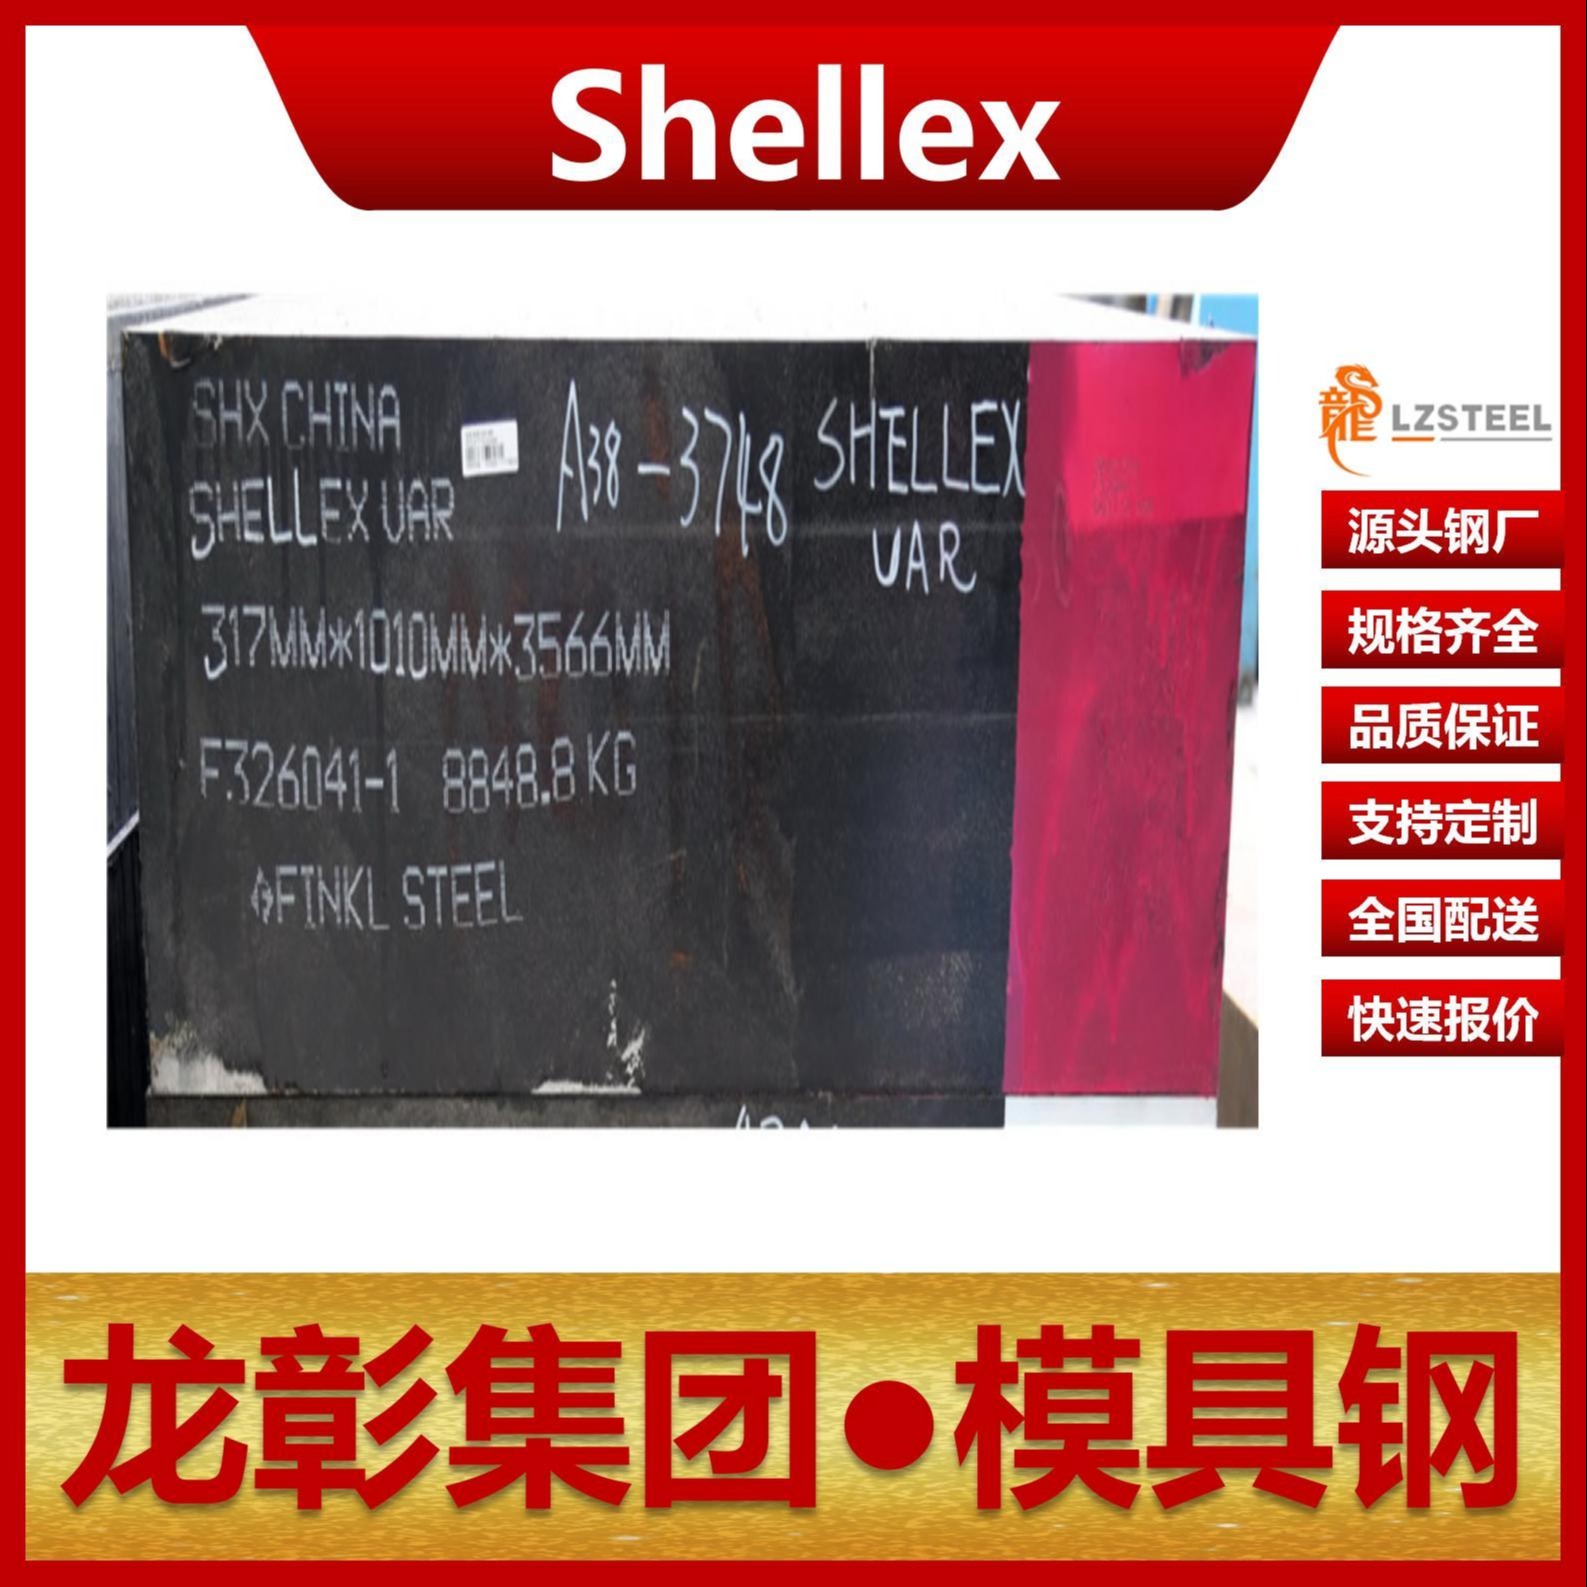 芬可乐Shellex模具钢现货批零 进口Shellex扁钢圆棒热作模具钢龙彰集团